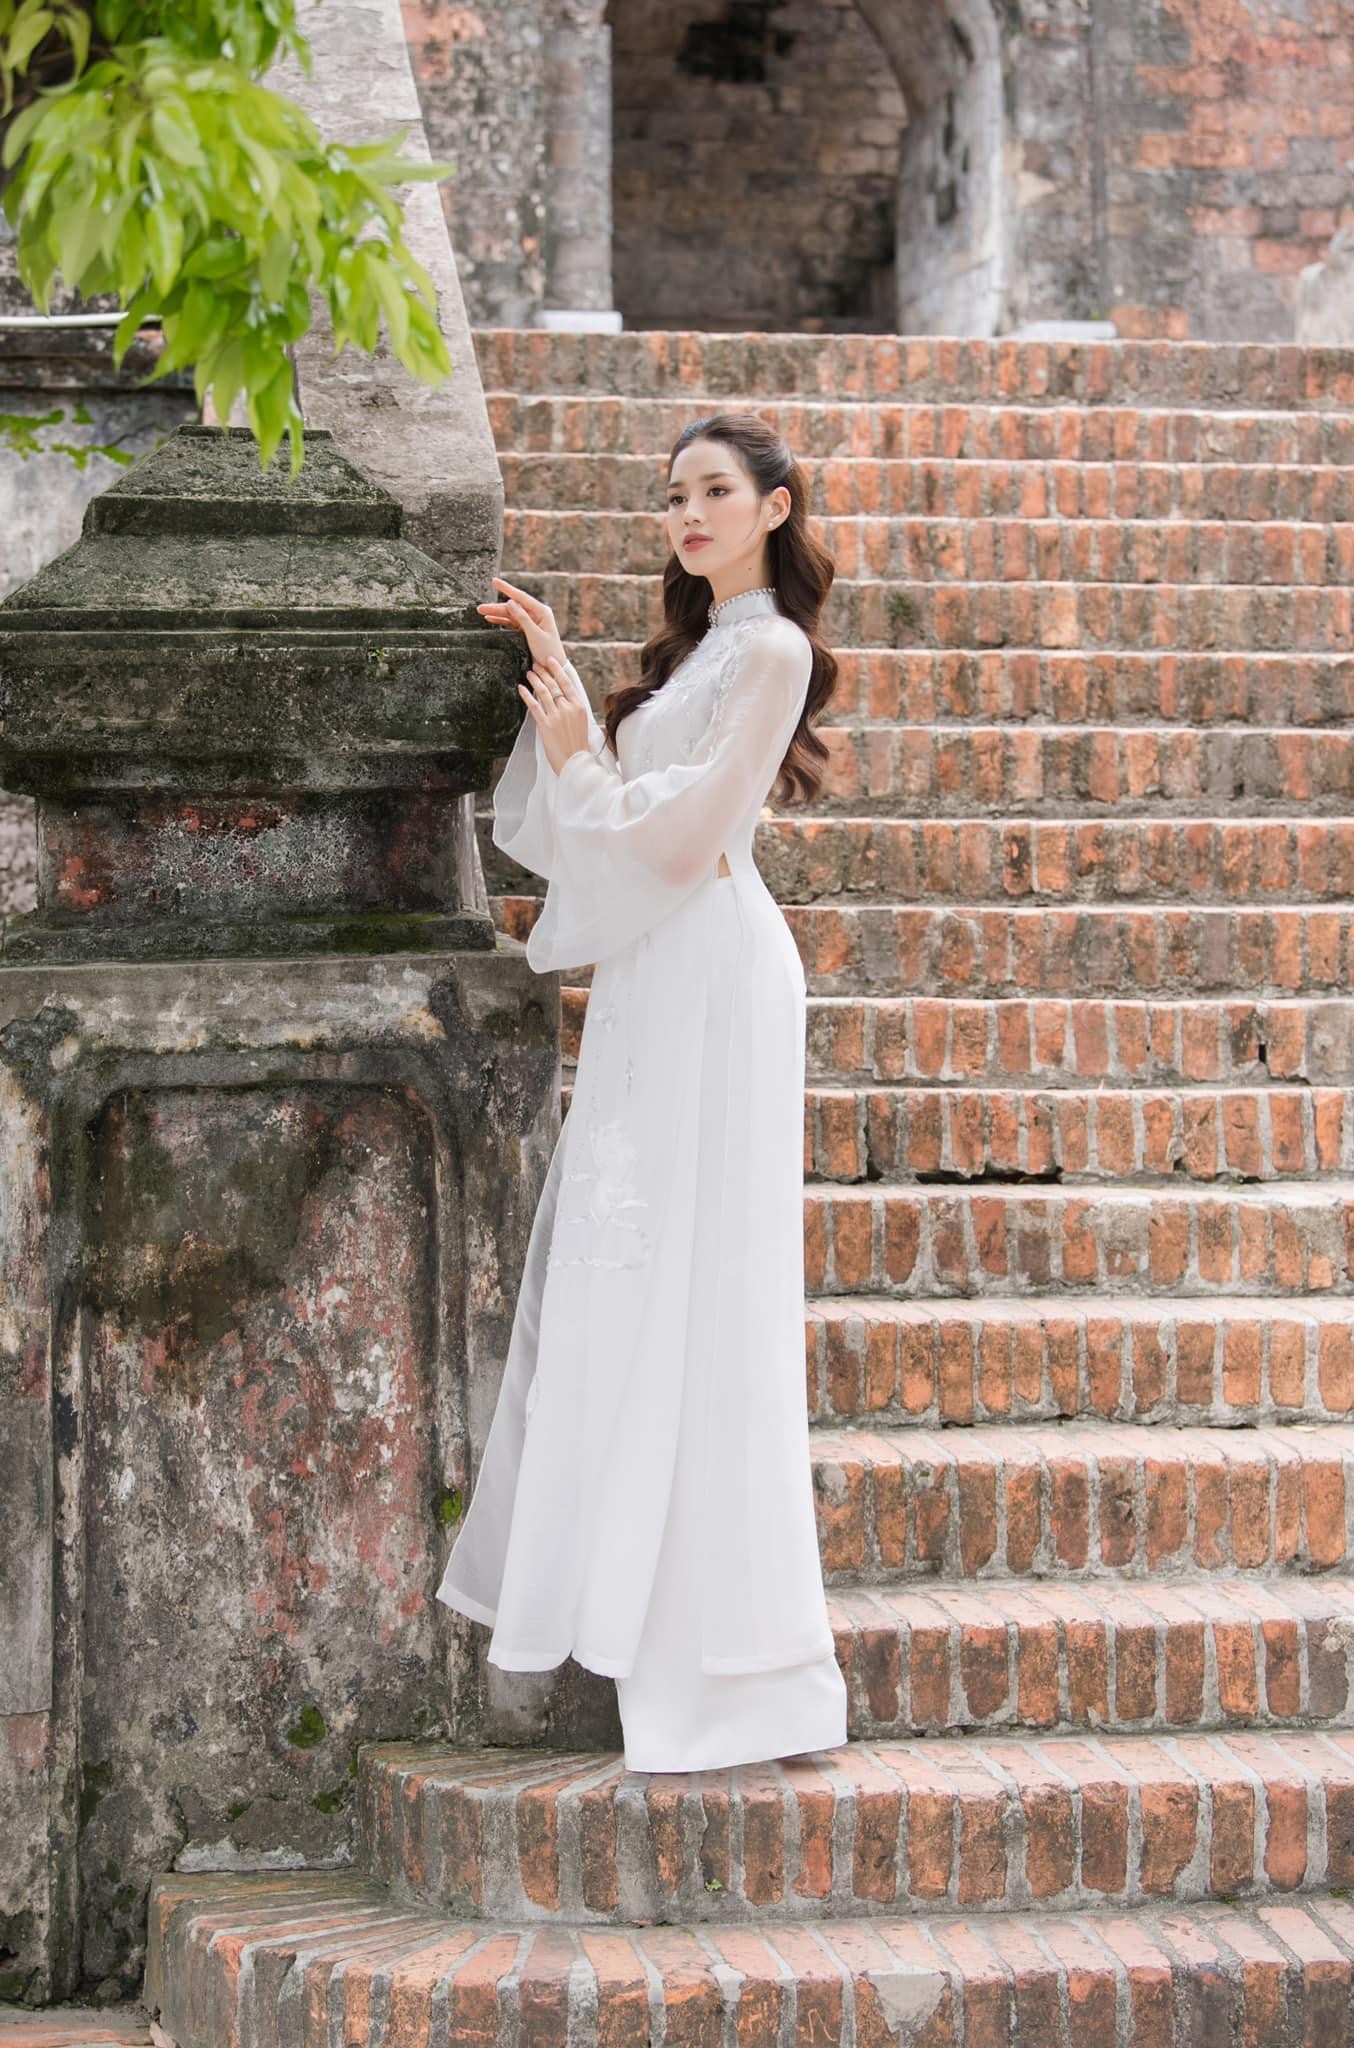 Hoa hậu Đỗ Thị Hà đẹp thuần khiết với áo dài trắng - Ảnh 6.